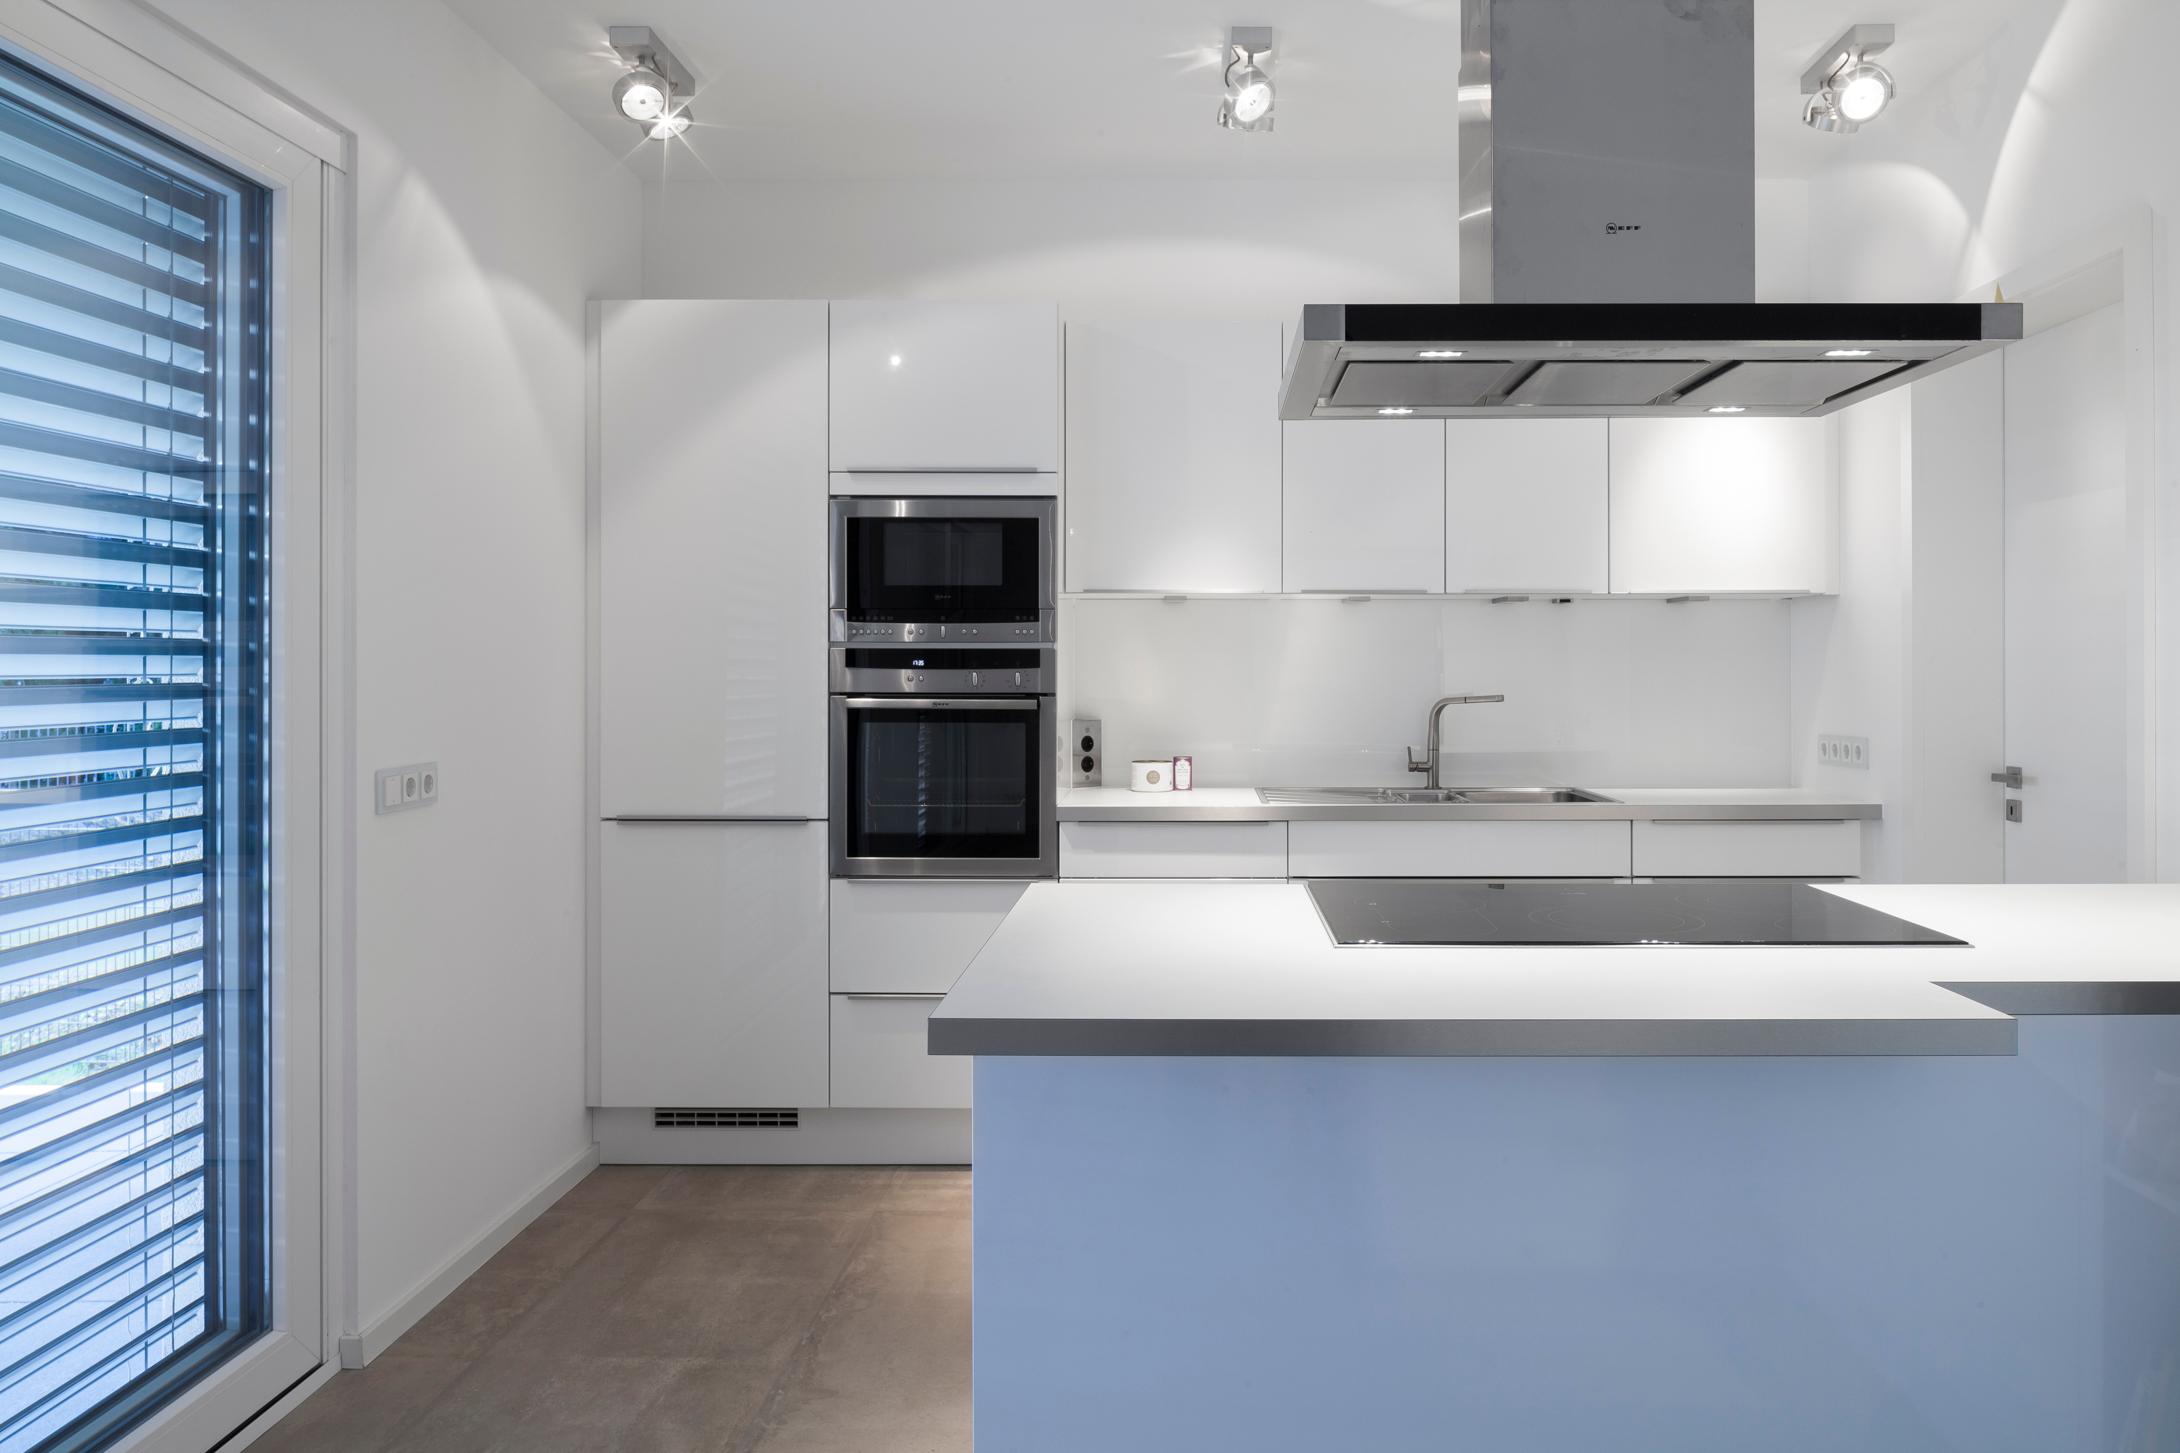 Küchenzone #bauhausstil #terrasse #minimalistisch #eingang #flachdach #garage #innenarchitektur ©Constantin Meyer Photographie